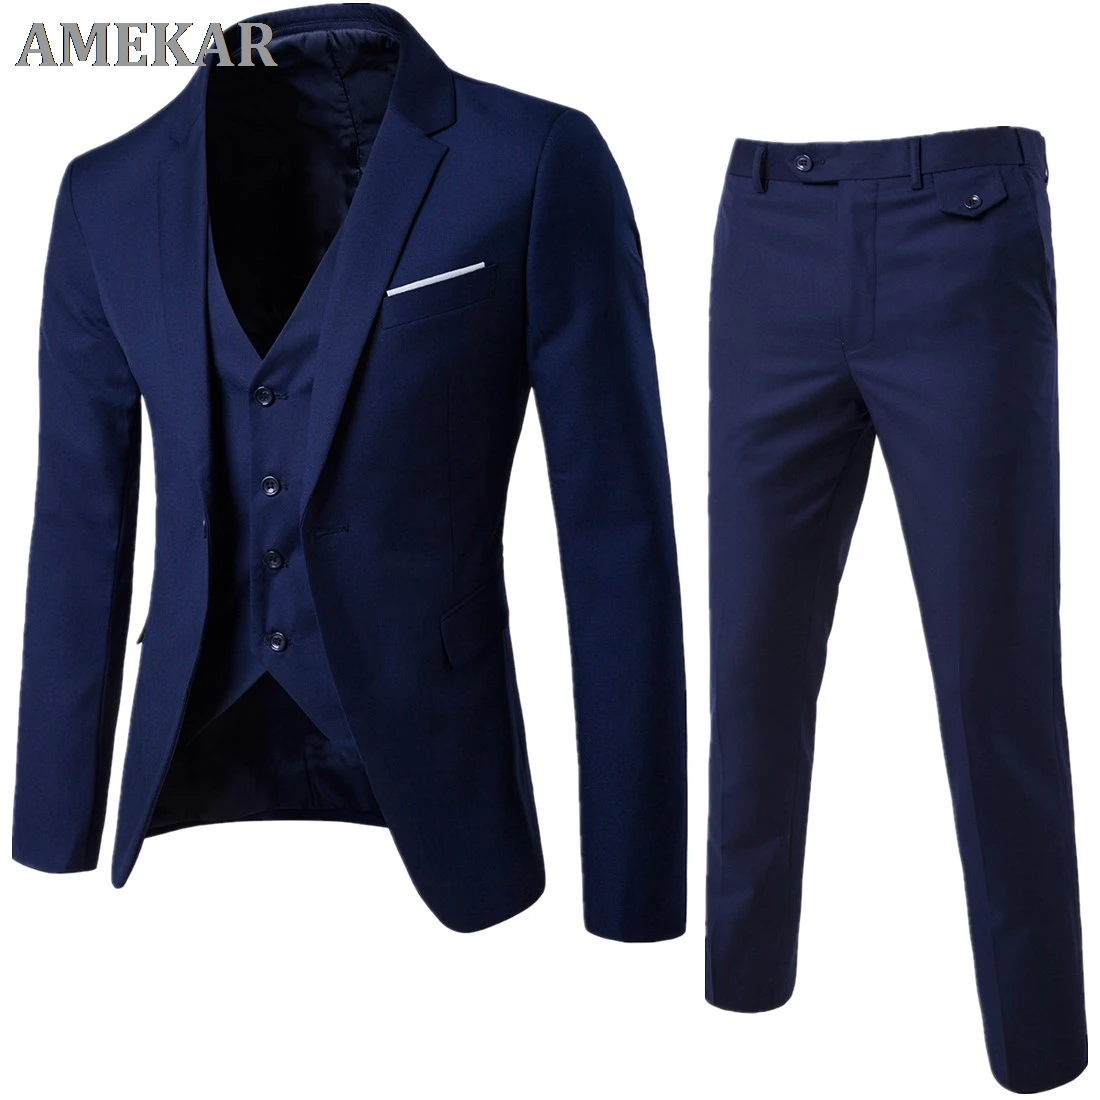 

Men's Classic Tuxedo 3pieces Set Suit Wedding Grooming Slim Fit Men Suit Jacket Pant Vest Black Gray Blue Red Plus Szie S-6XL